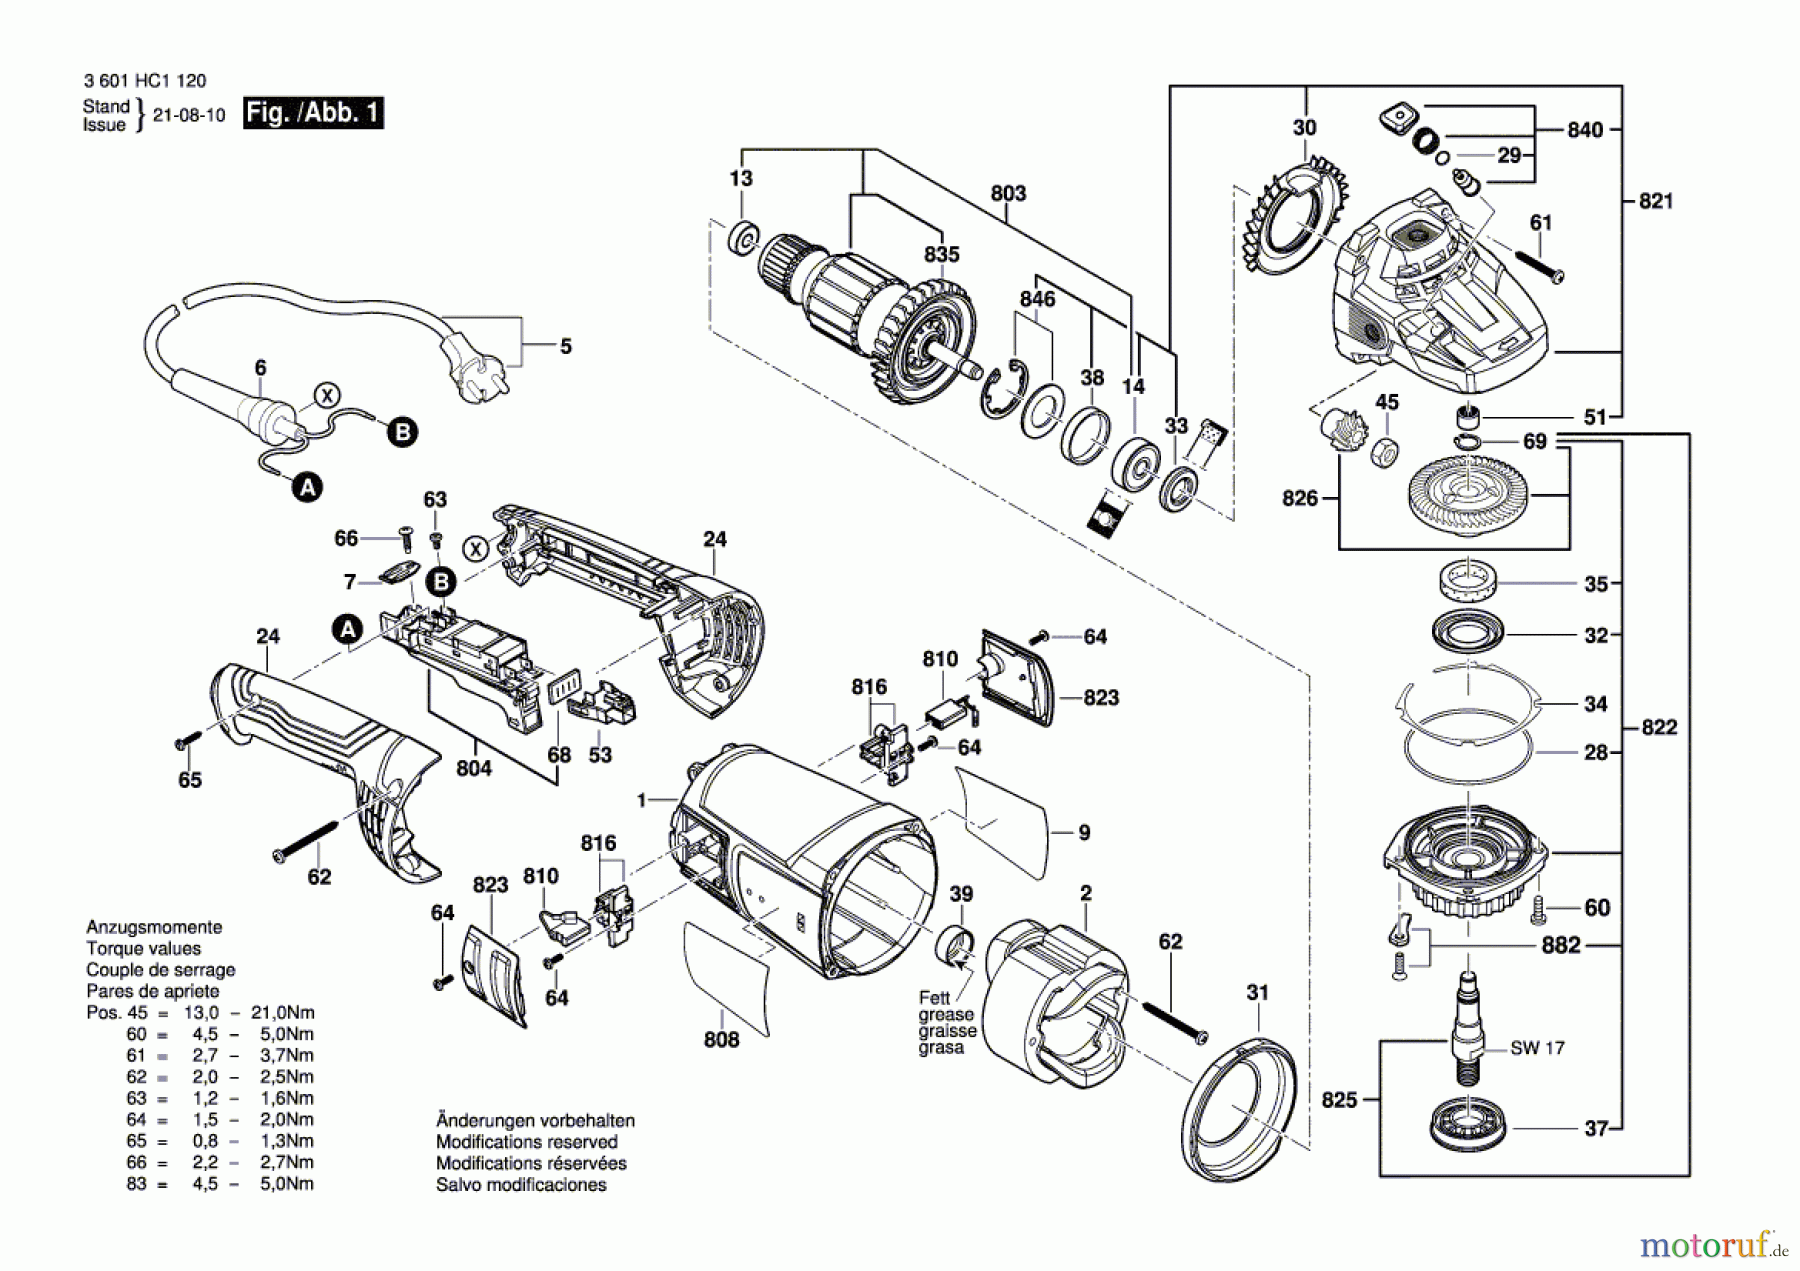  Bosch Werkzeug Winkelschleifer GWS 20-230 P Seite 1